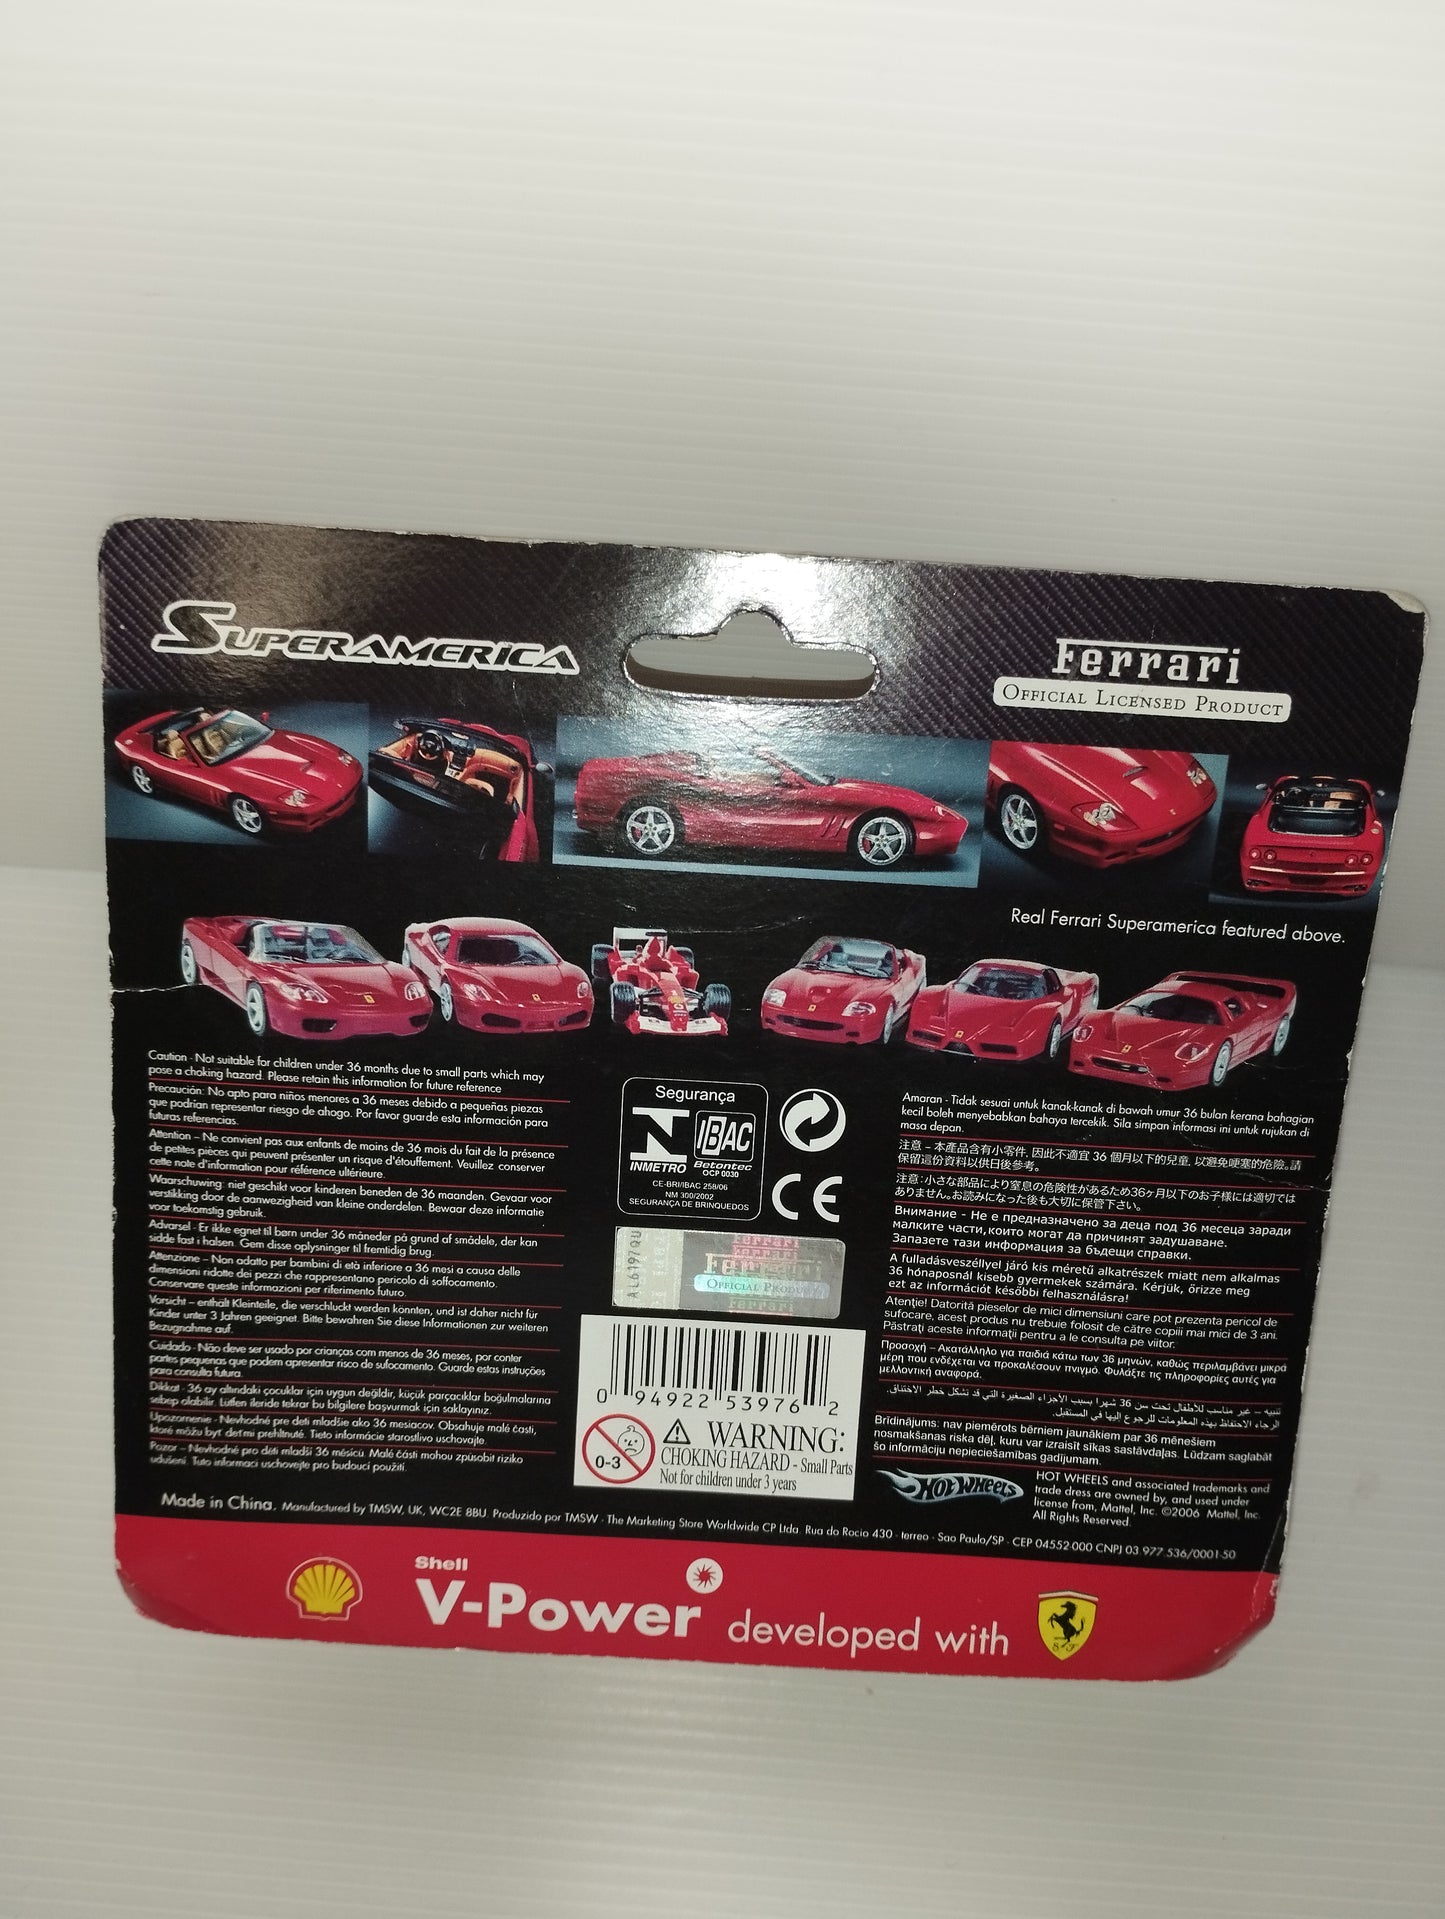 Ferrari Superamerica Shell V-Power Hot Whells
Scala 1:38